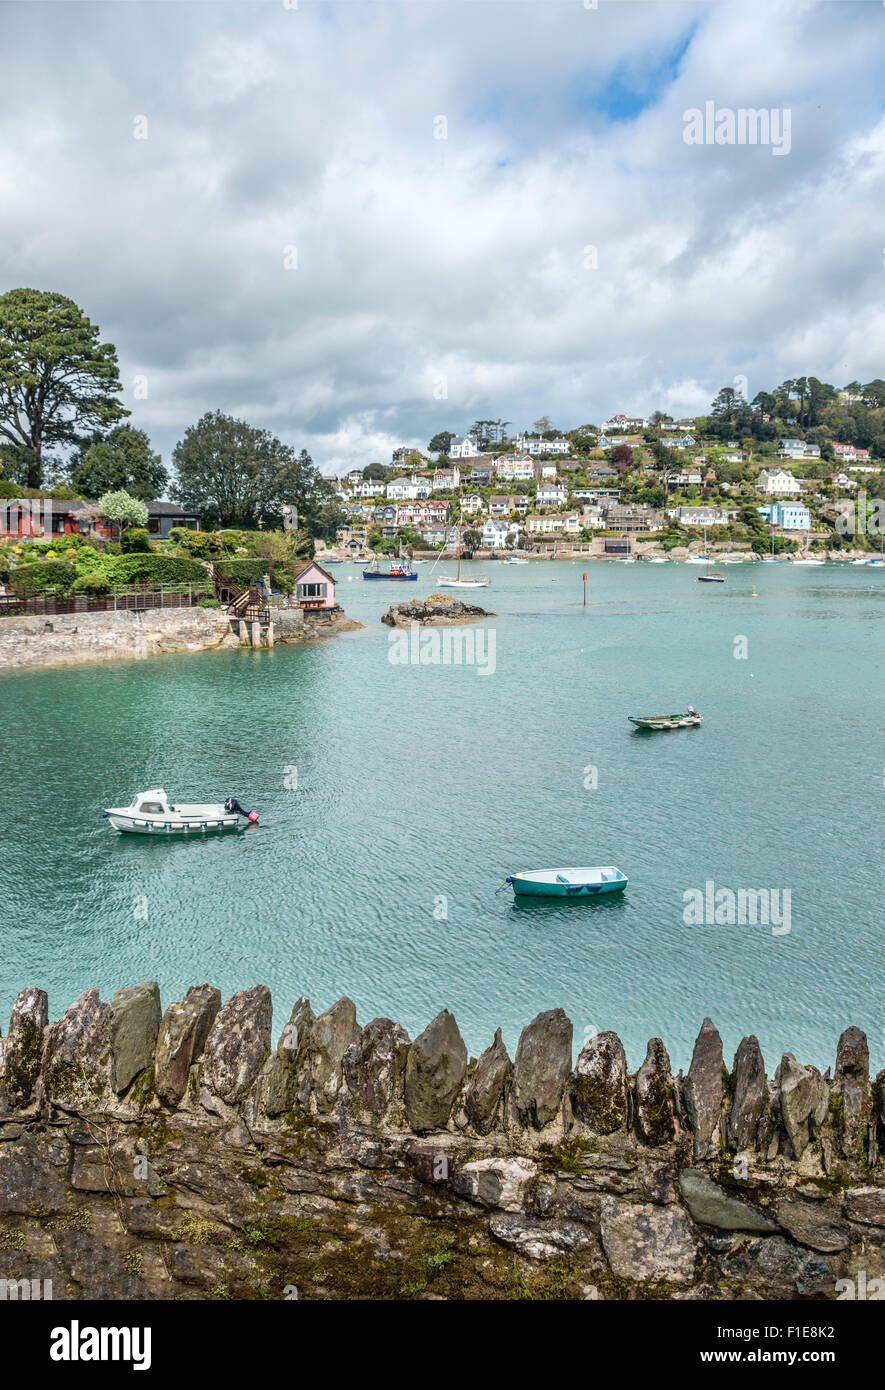 Vista a Dartmouth e Kingswear al River Dart, Devon, Inghilterra, Regno Unito Foto Stock